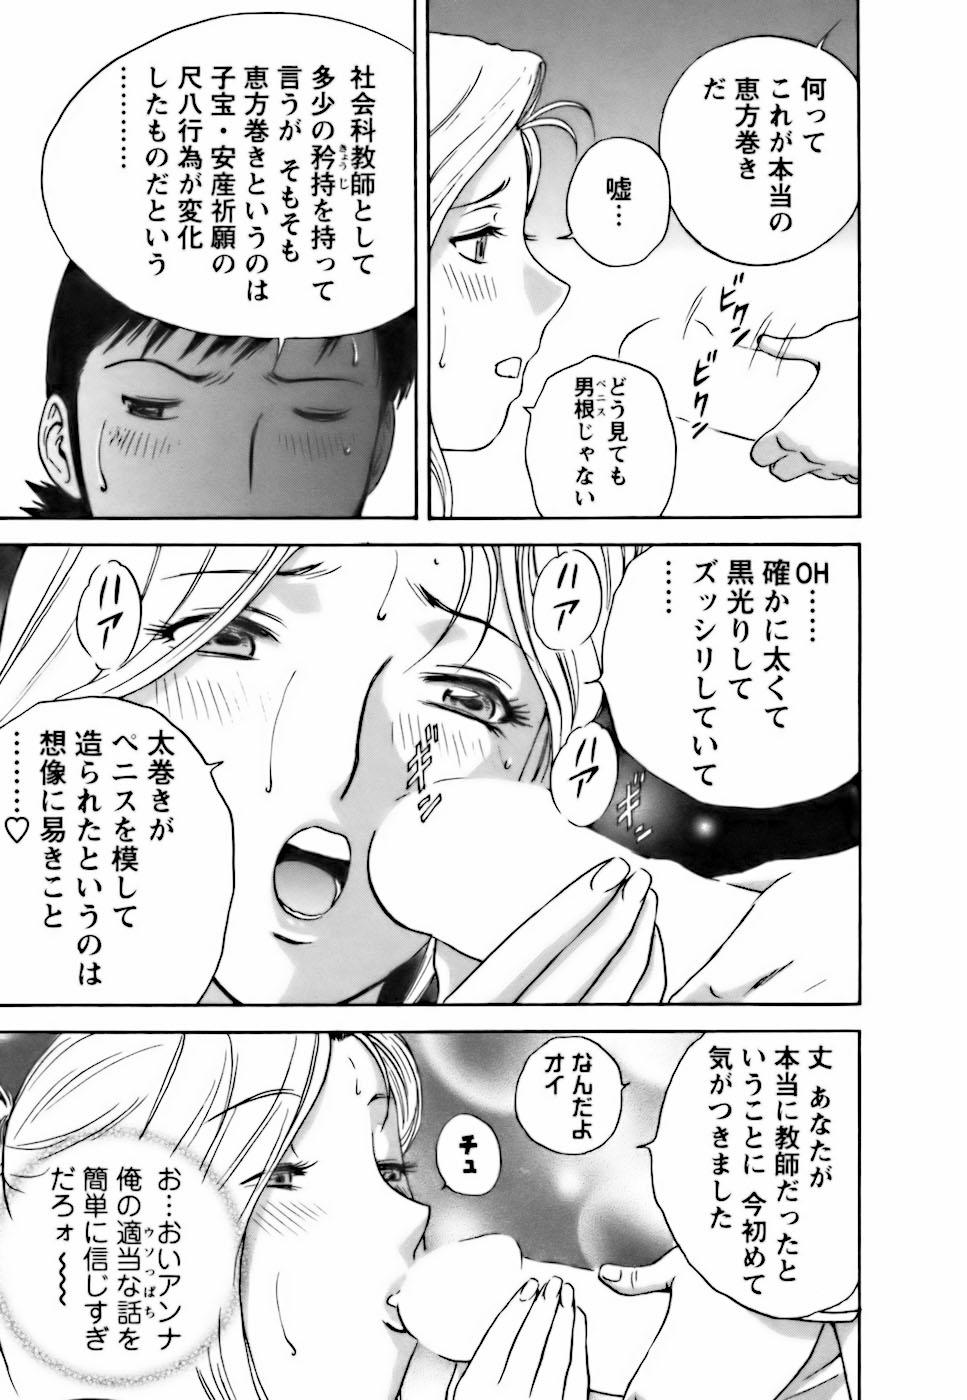 [Hidemaru] Mo-Retsu! Boin Sensei (Boing Boing Teacher) Vol.3 176